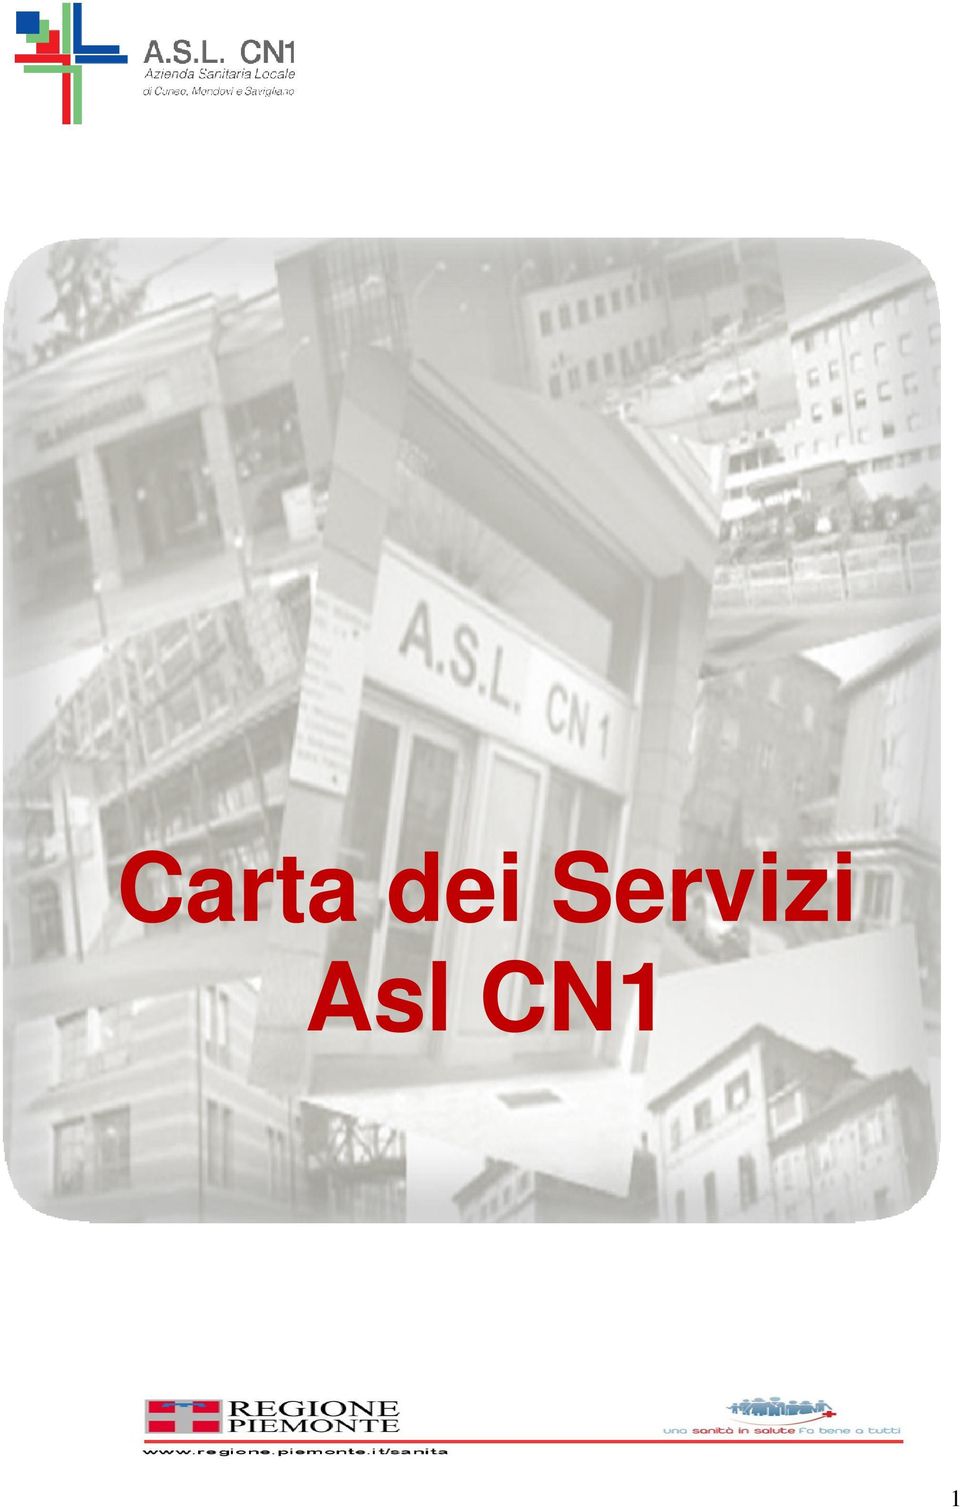 Asl CN1 1